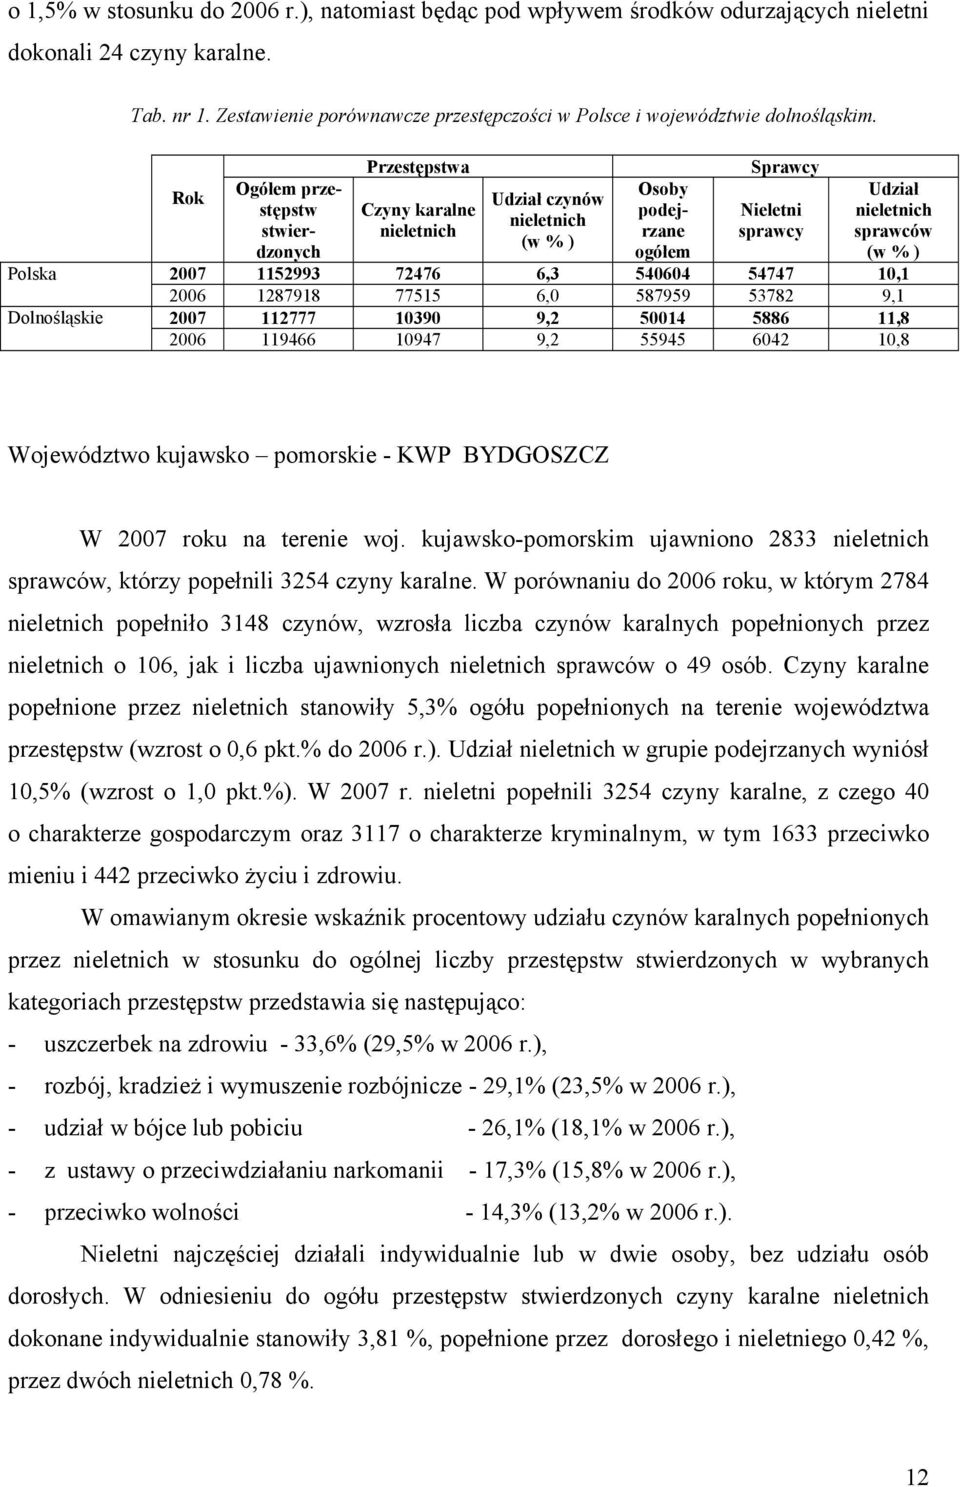 Polska Dolnośląskie Rok Ogółem przestępstw stwierdzonych Przestępstwa Czyny karalne nieletnich Udział czynów nieletnich (w % ) Osoby podejrzane ogółem Sprawcy Nieletni sprawcy Udział nieletnich